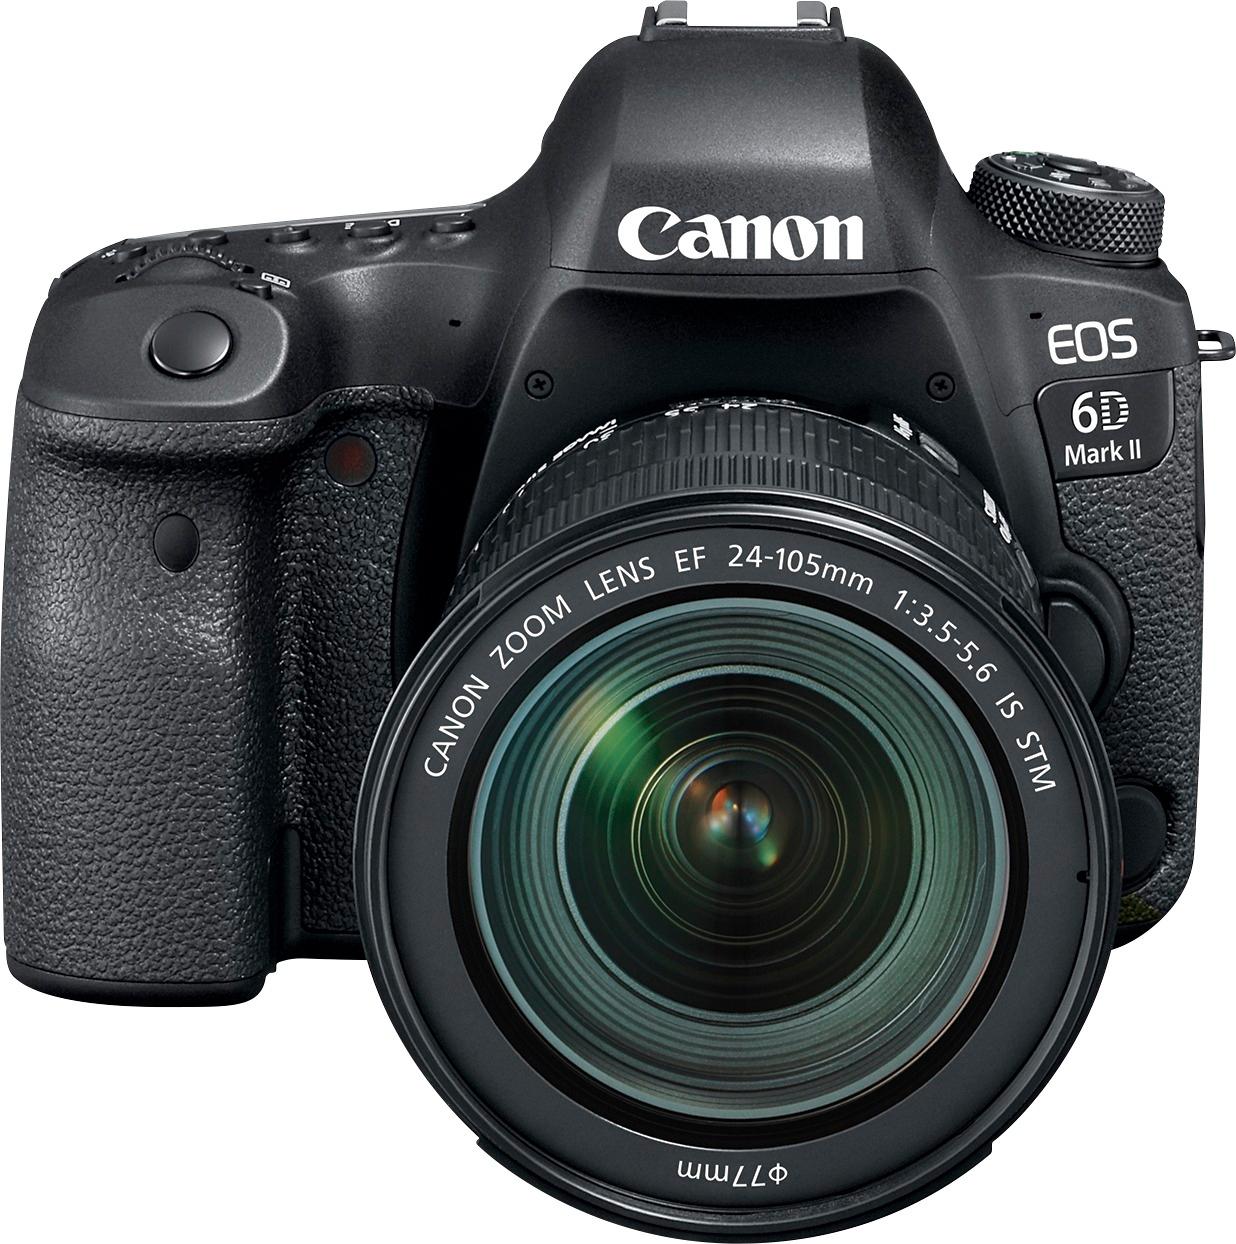 Kwestie Wennen aan vergelijking Best Buy: Canon EOS 6D Mark II DSLR Camera with EF 24-105mm f/3.5-5.6 IS  STM Lens Black 1897C021